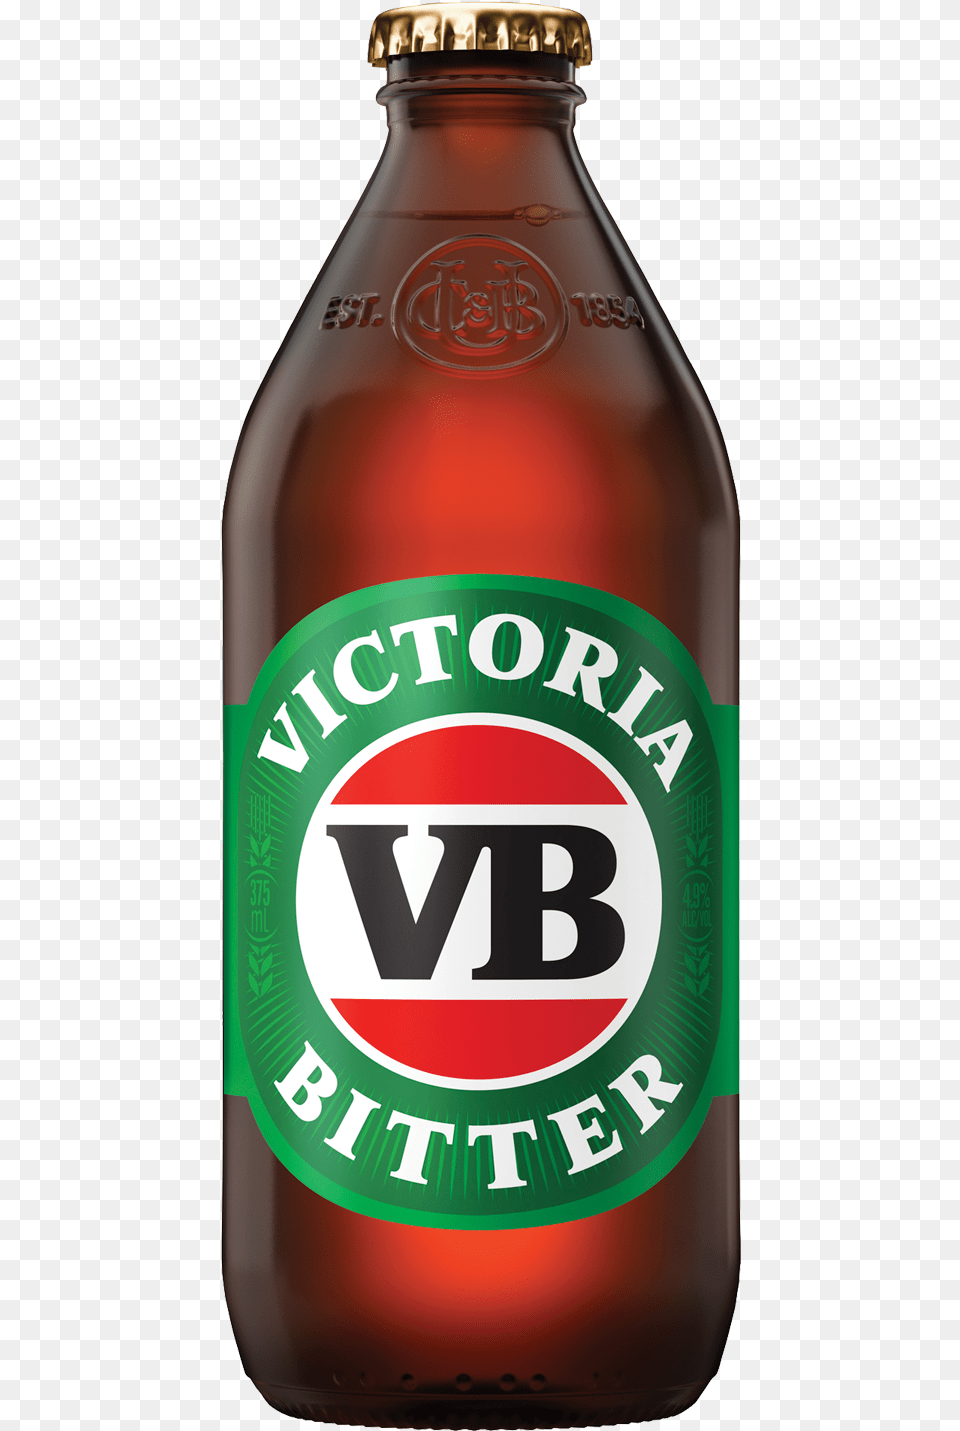 Victoria Bitter Bottles 375ml Victoria Bitter, Alcohol, Beer, Beer Bottle, Beverage Free Transparent Png